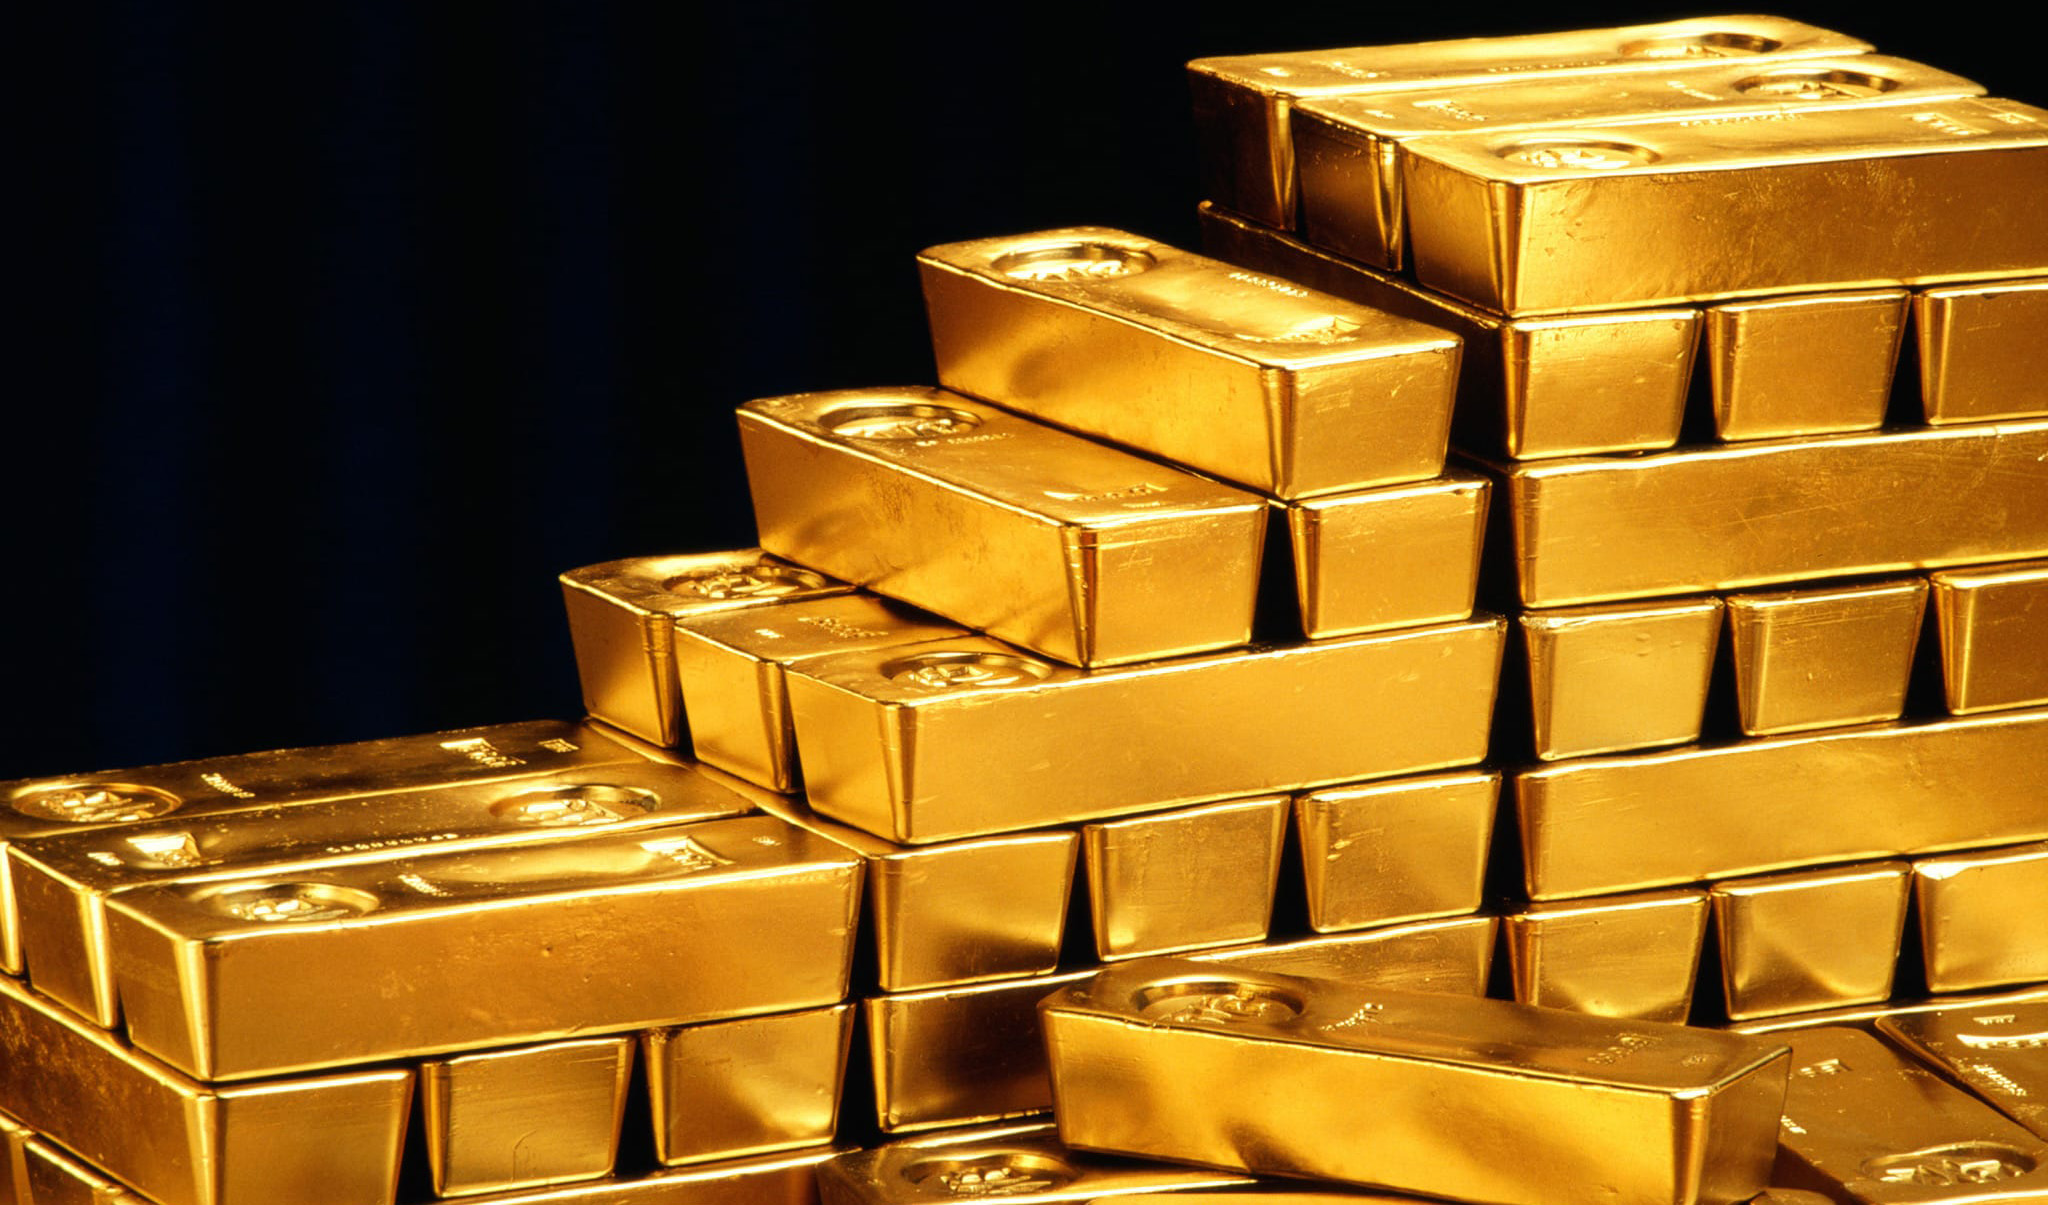 قیمت جهانی طلا امروز ۱۴۰۳/۰۳/۱۱